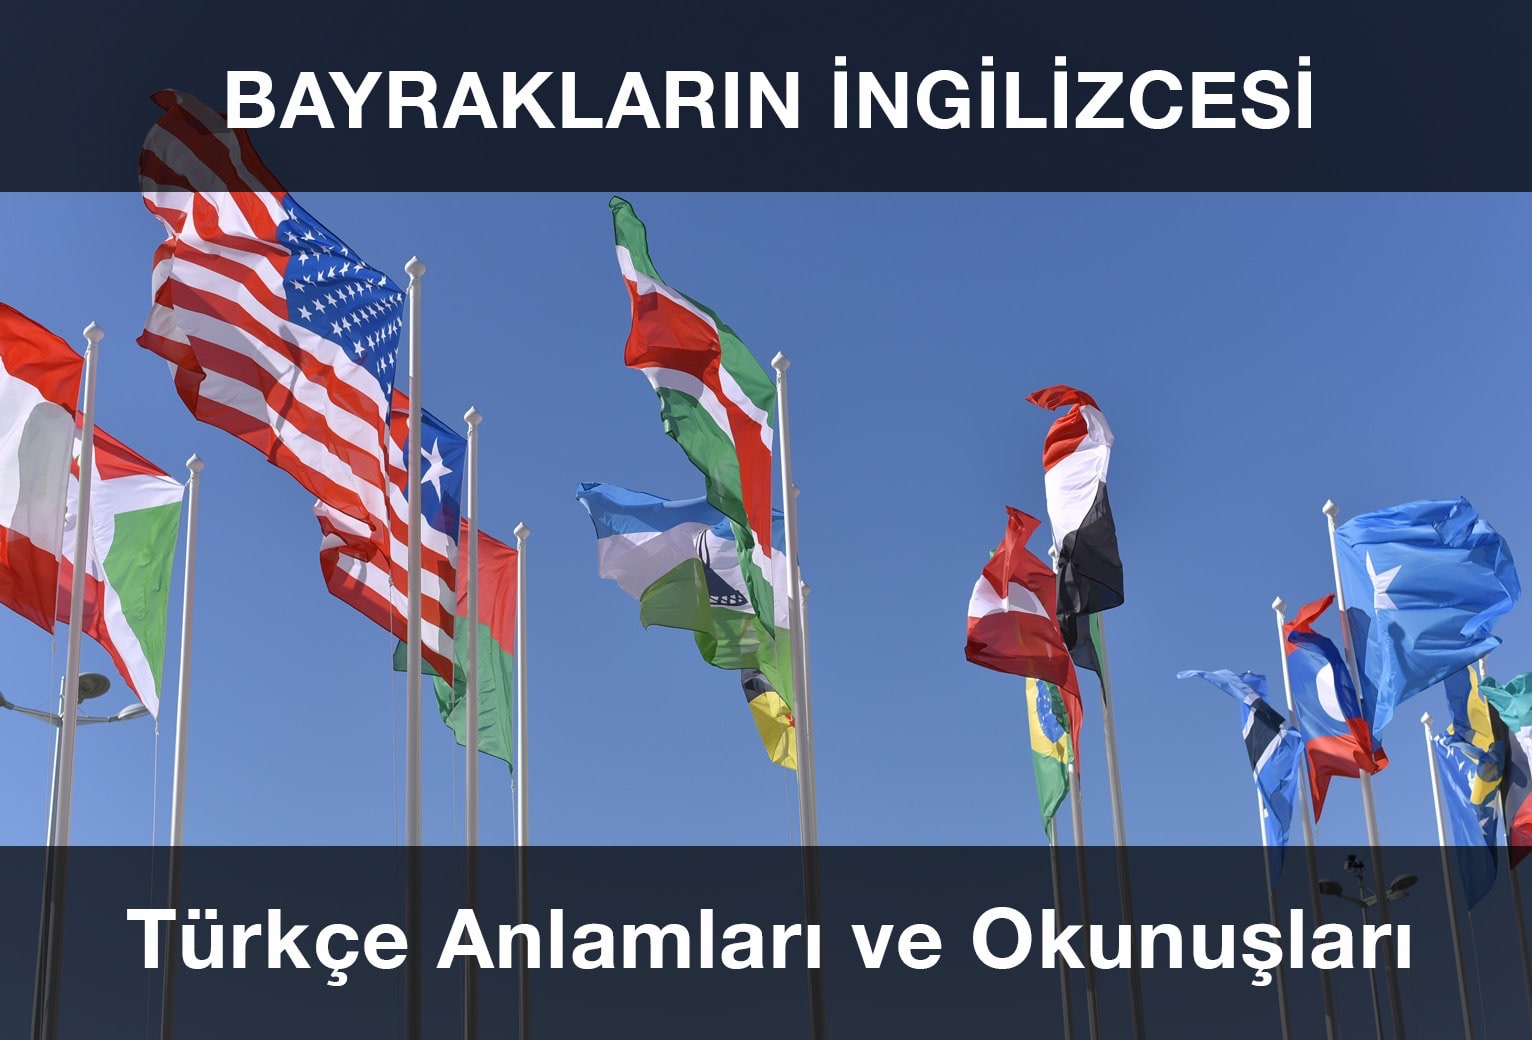 Bayrakların İngilizcesi, Anlamları ve Türkçe Okunuşları